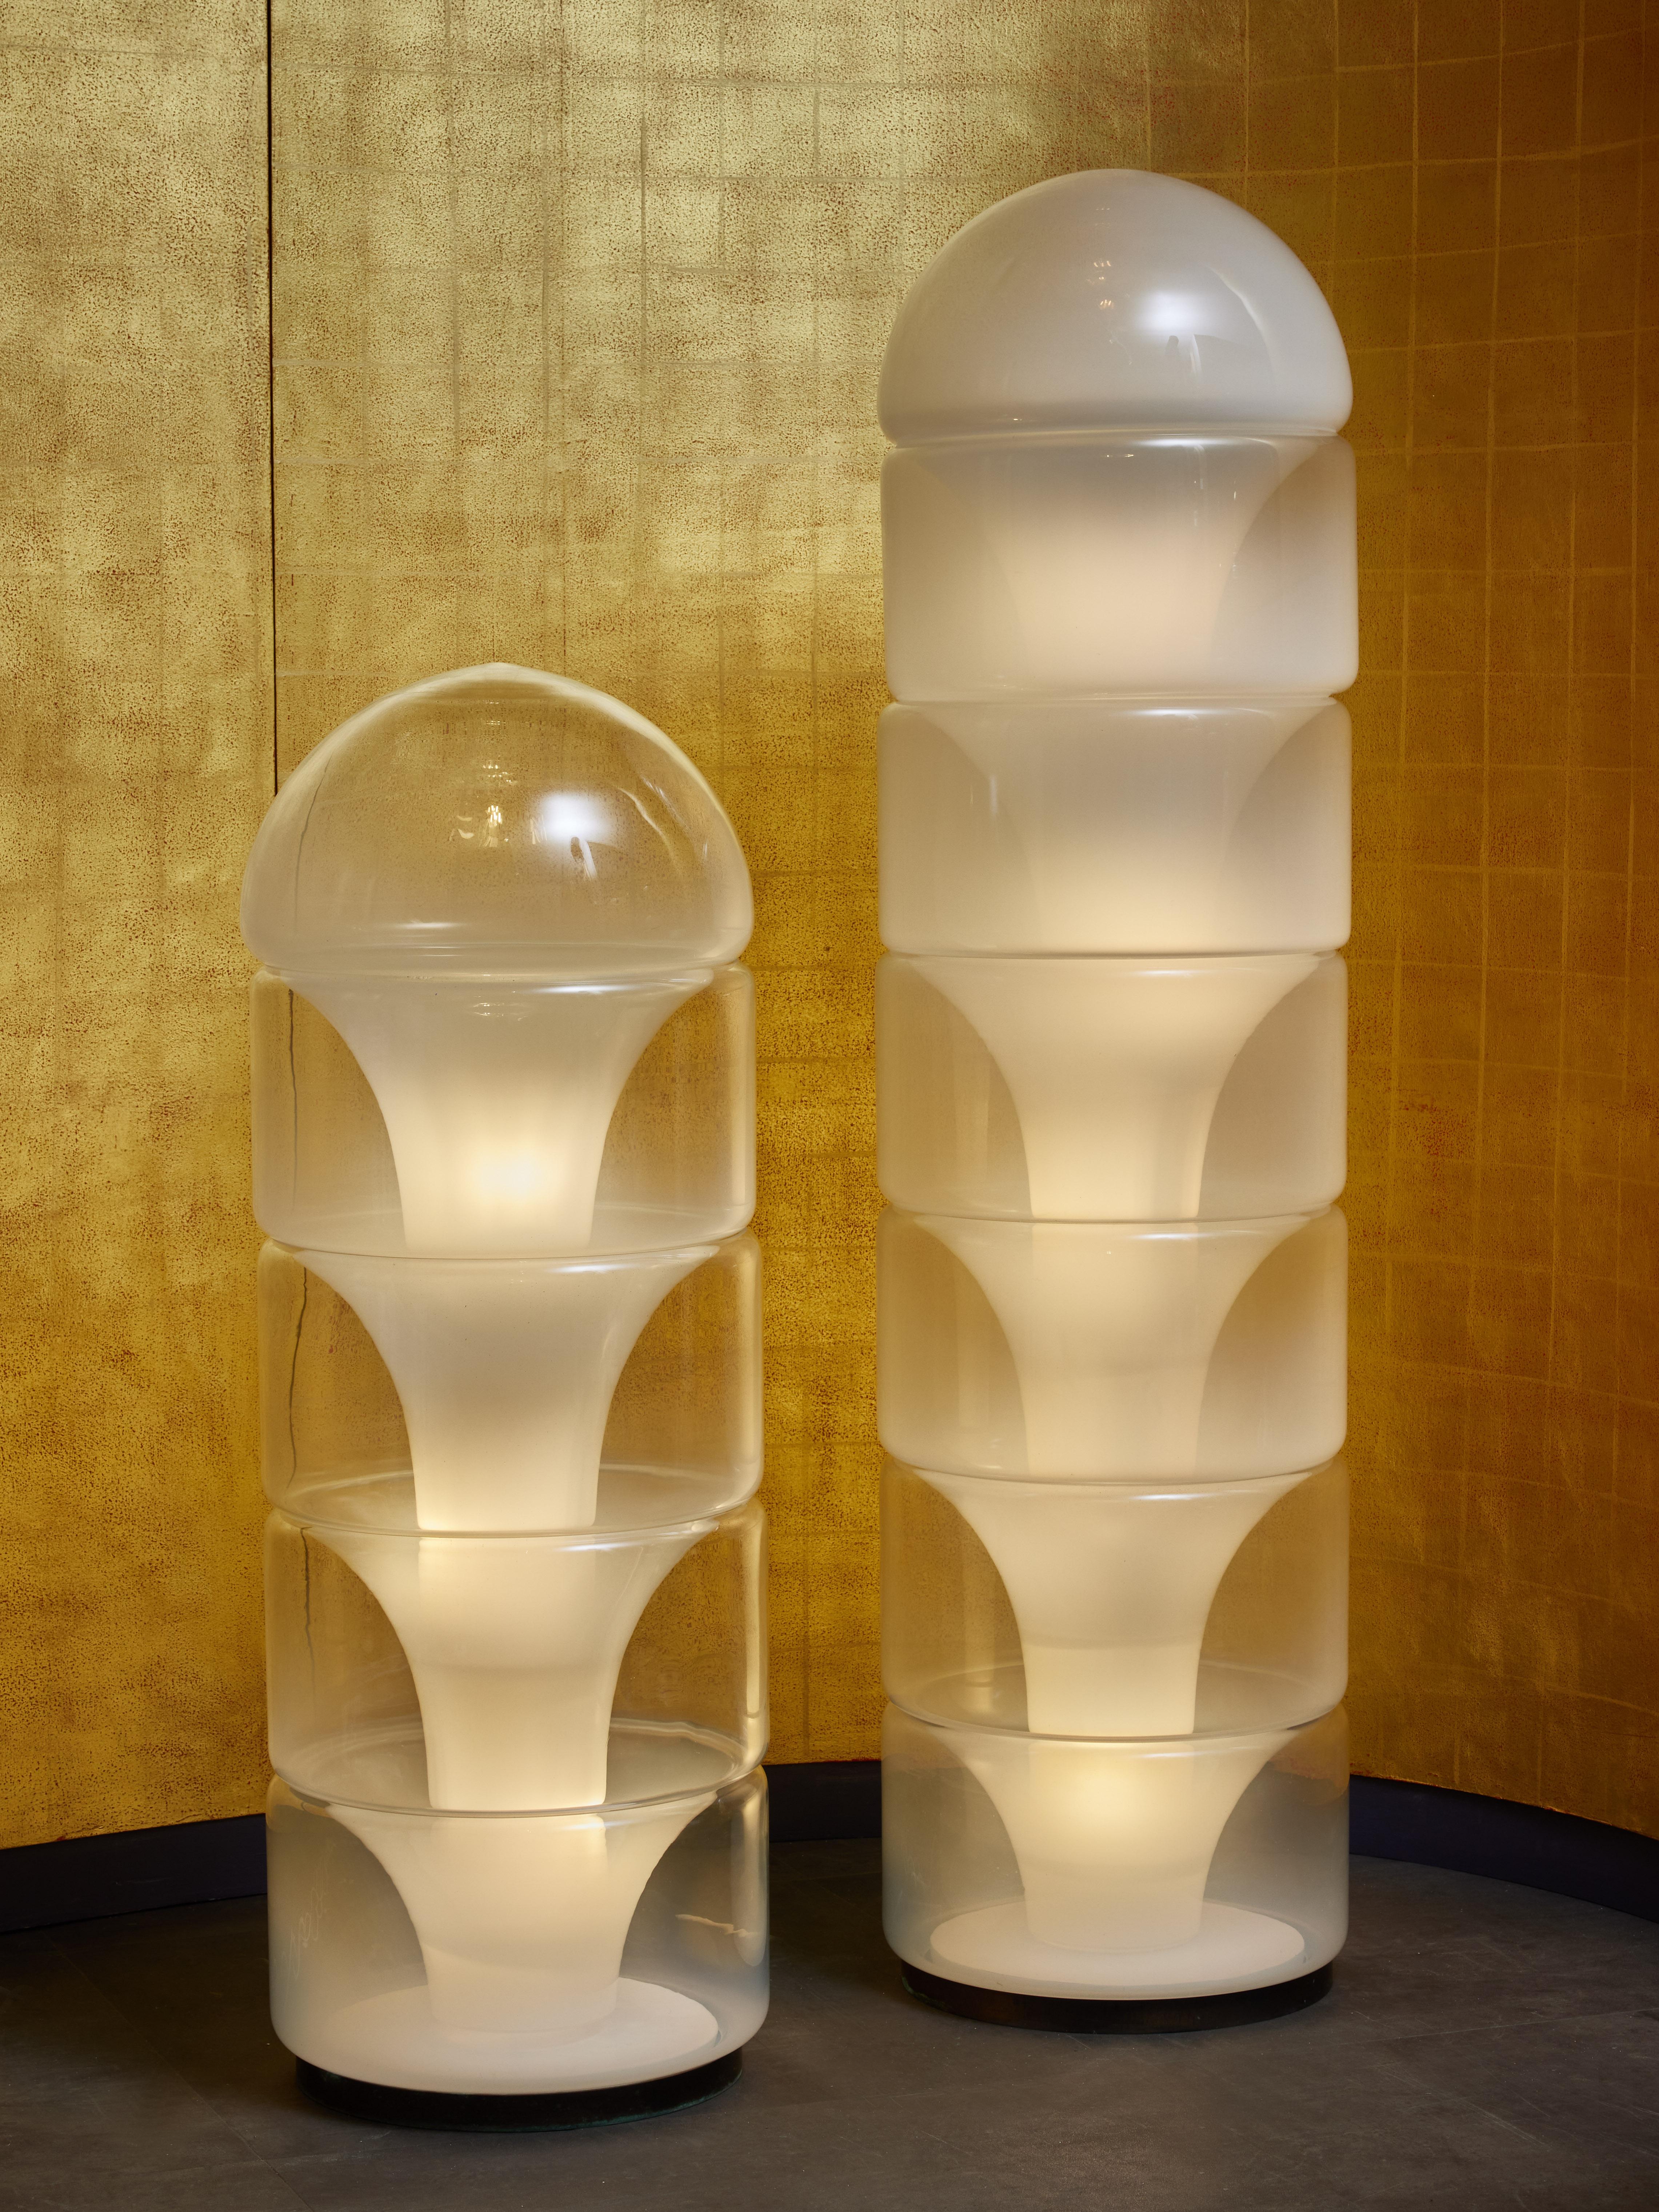 Lampadaire en verre Sfumato conçu par Carlo Nason pour Mazzega.

Cette pièce (illustrée à gauche) est composée d'une structure intérieure en métal sur laquelle sont empilés cinq éléments en verre de Murano qui diffusent la lumière.